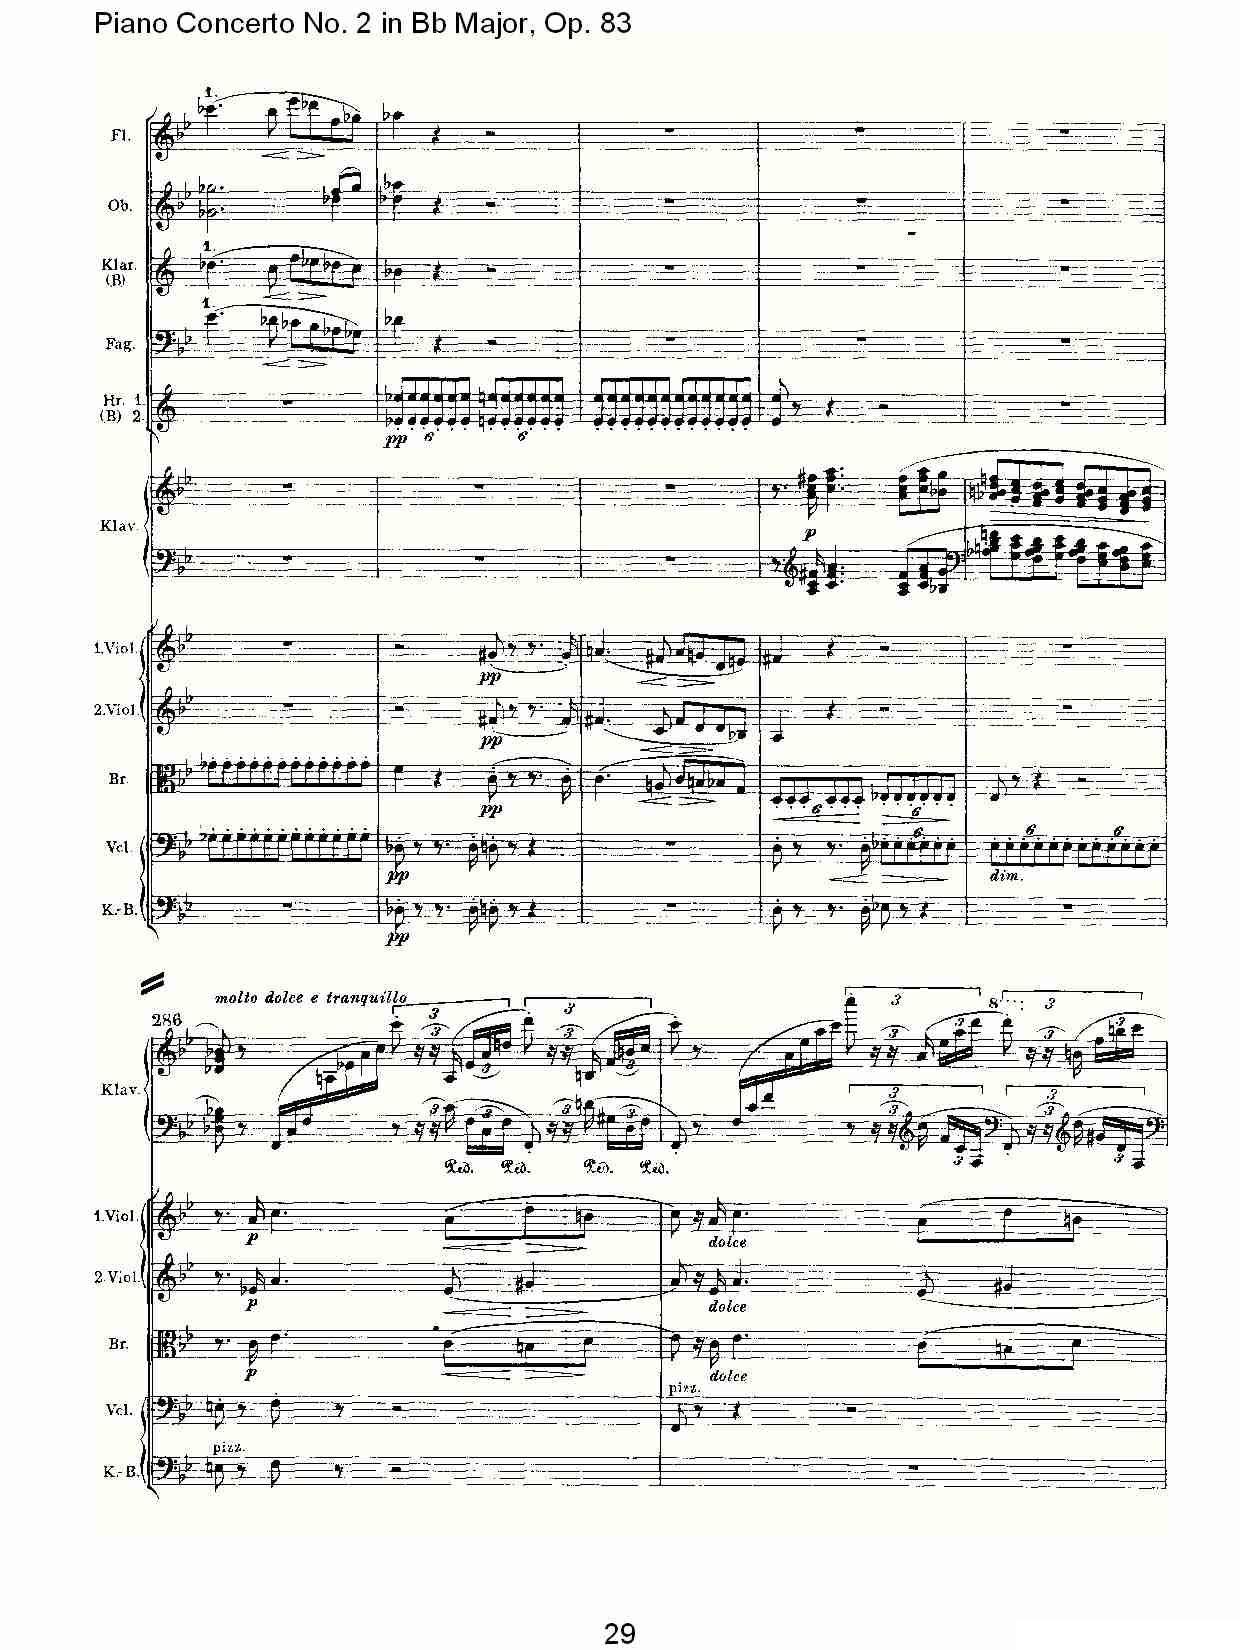 Bb大调钢琴第二协奏曲, Op.83第一乐章（一）钢琴曲谱（图30）